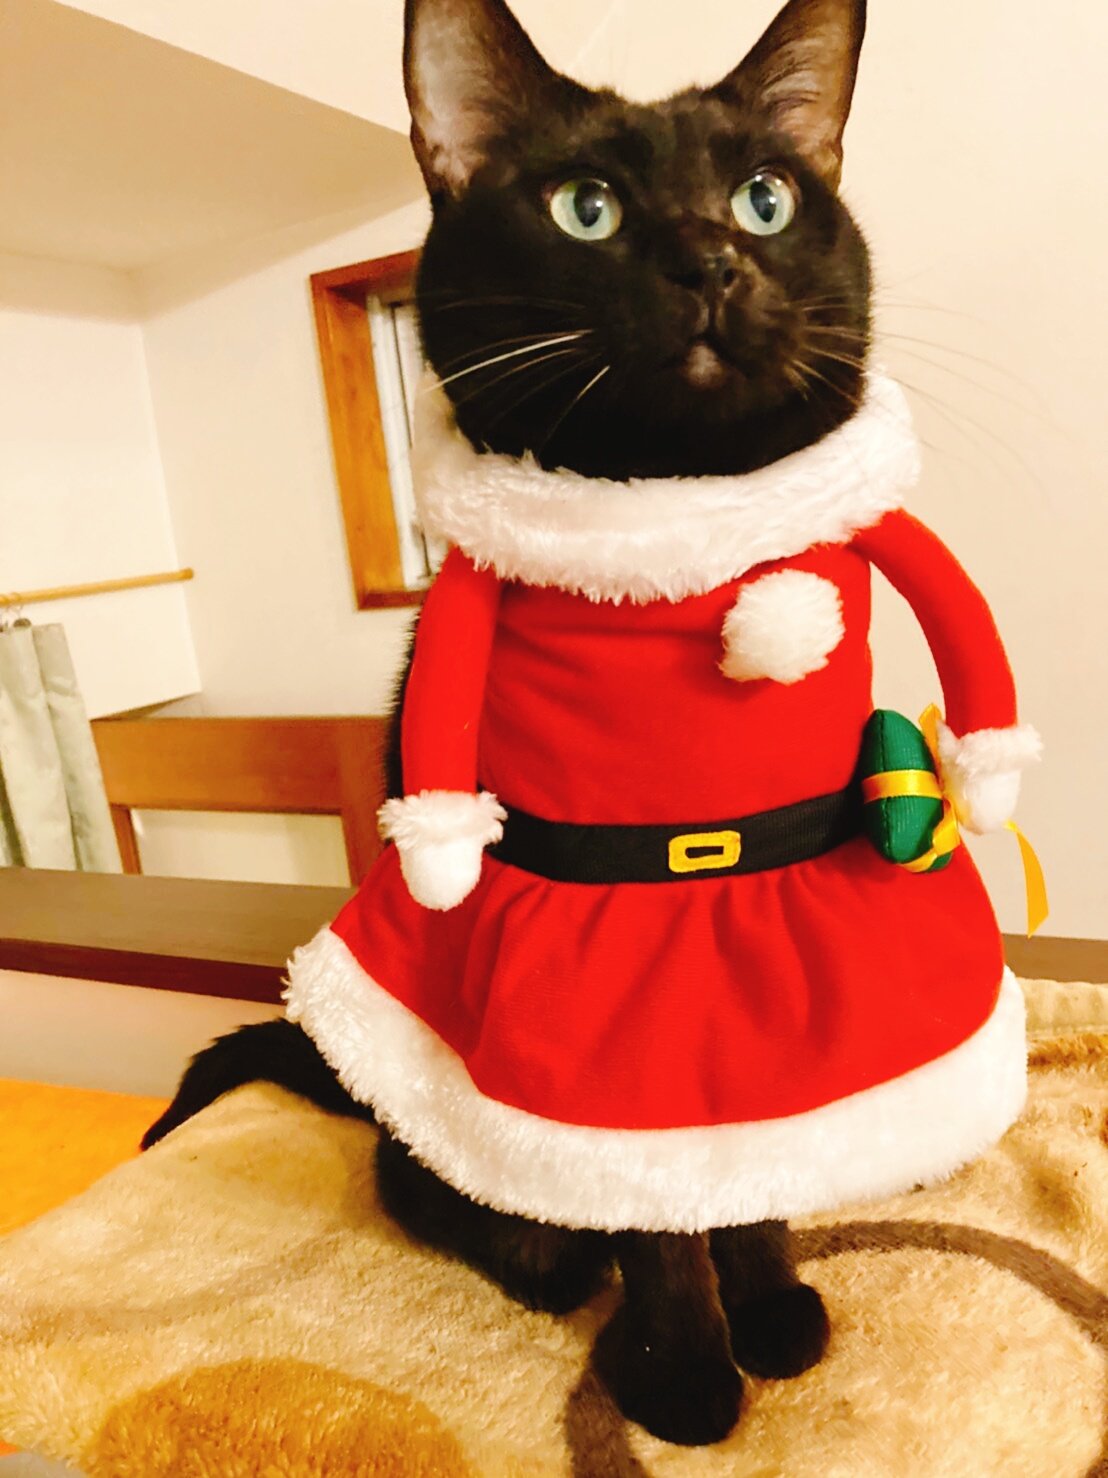 クリスマス用におめかししたつもりが 某安全猫さんになってしまったw 話題の画像プラス